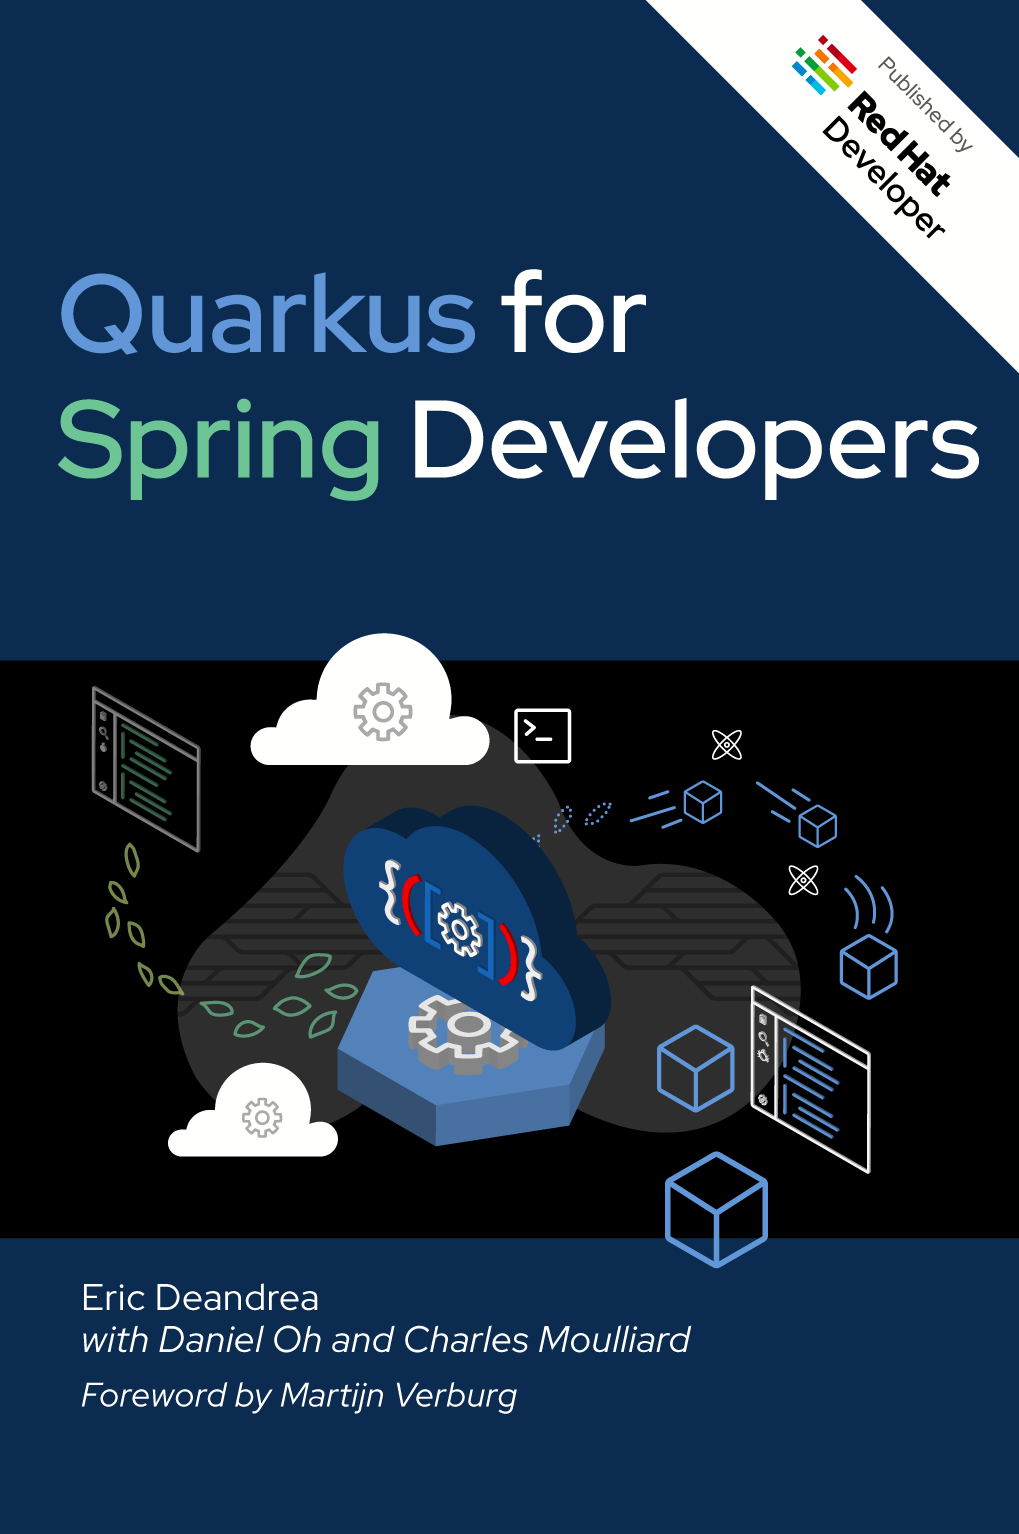 Quarkus for Spring Developers e-book